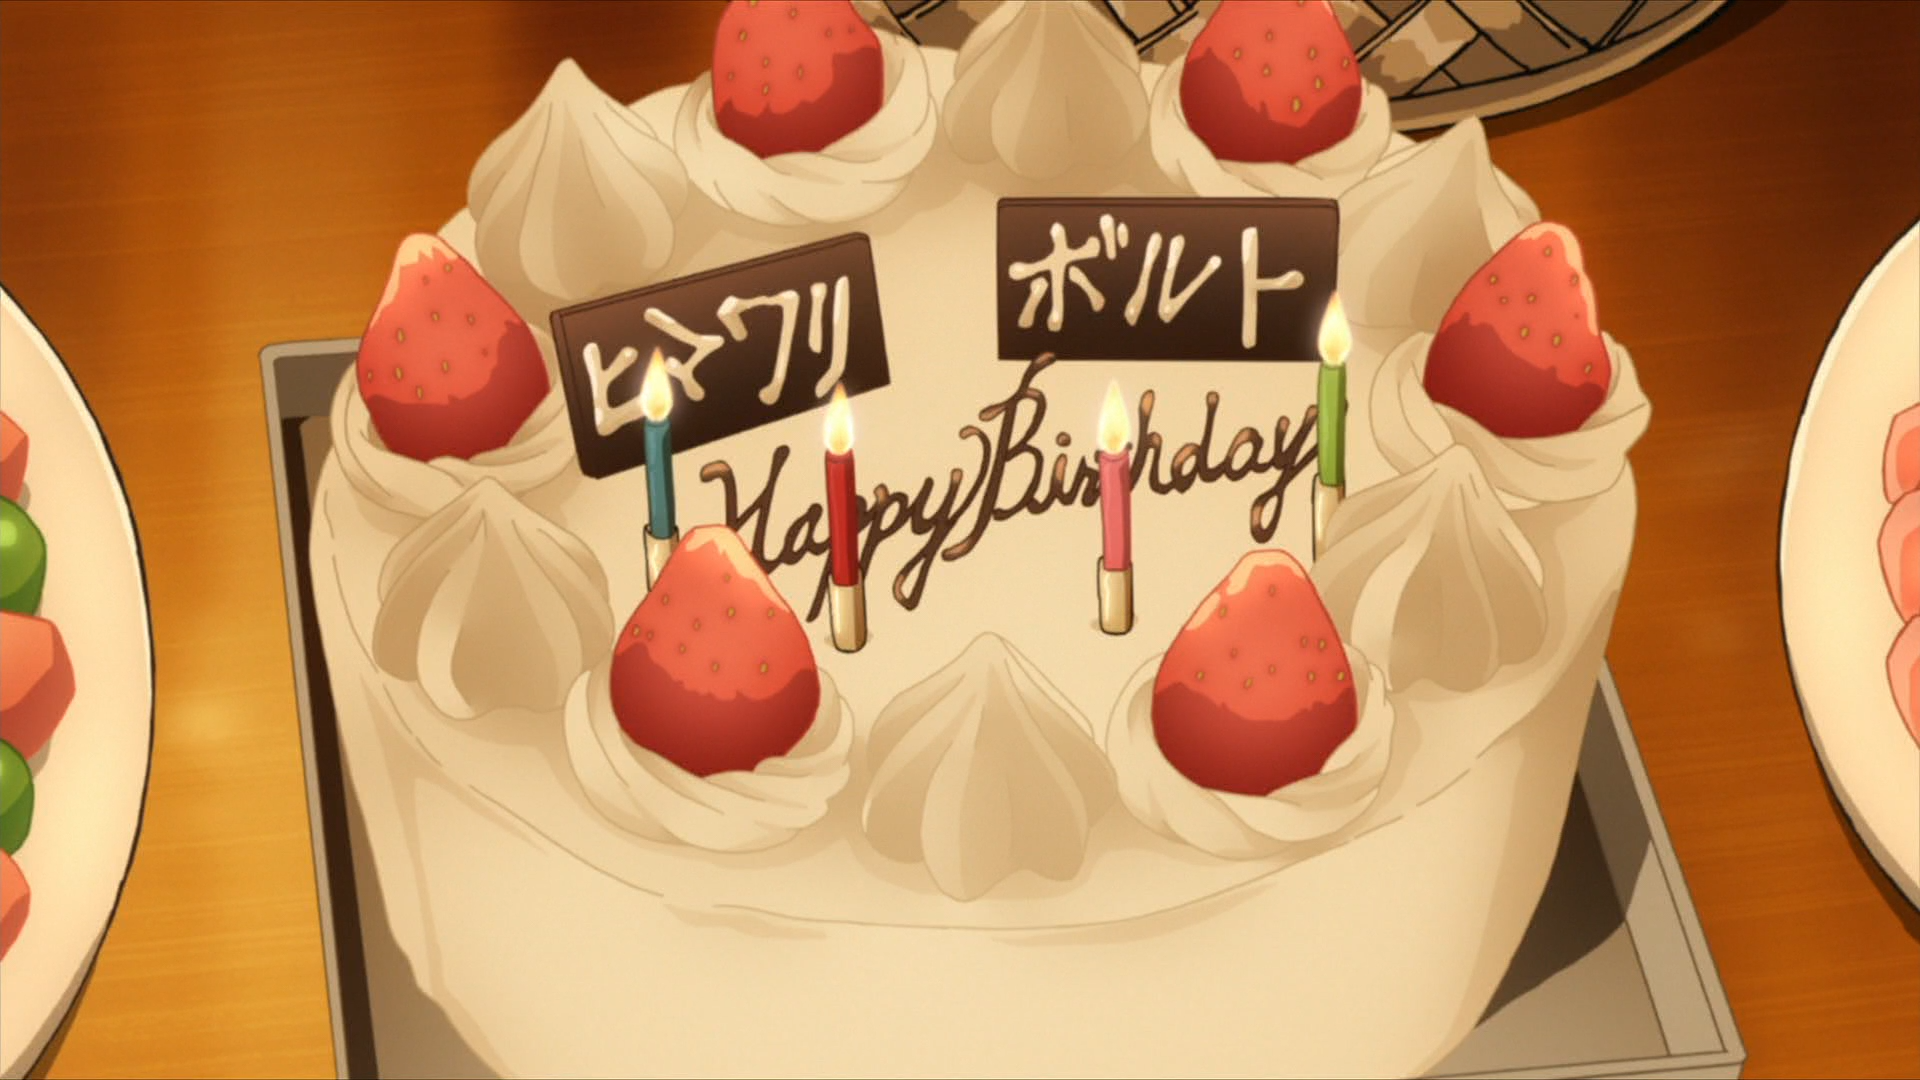 Un pastel de cumpleaños está listo para Himawari y Boruto Uzumaki en una escena del episodio 66 del anime de televisión BORUTO: NARUTO NEXT GENERATIONS.